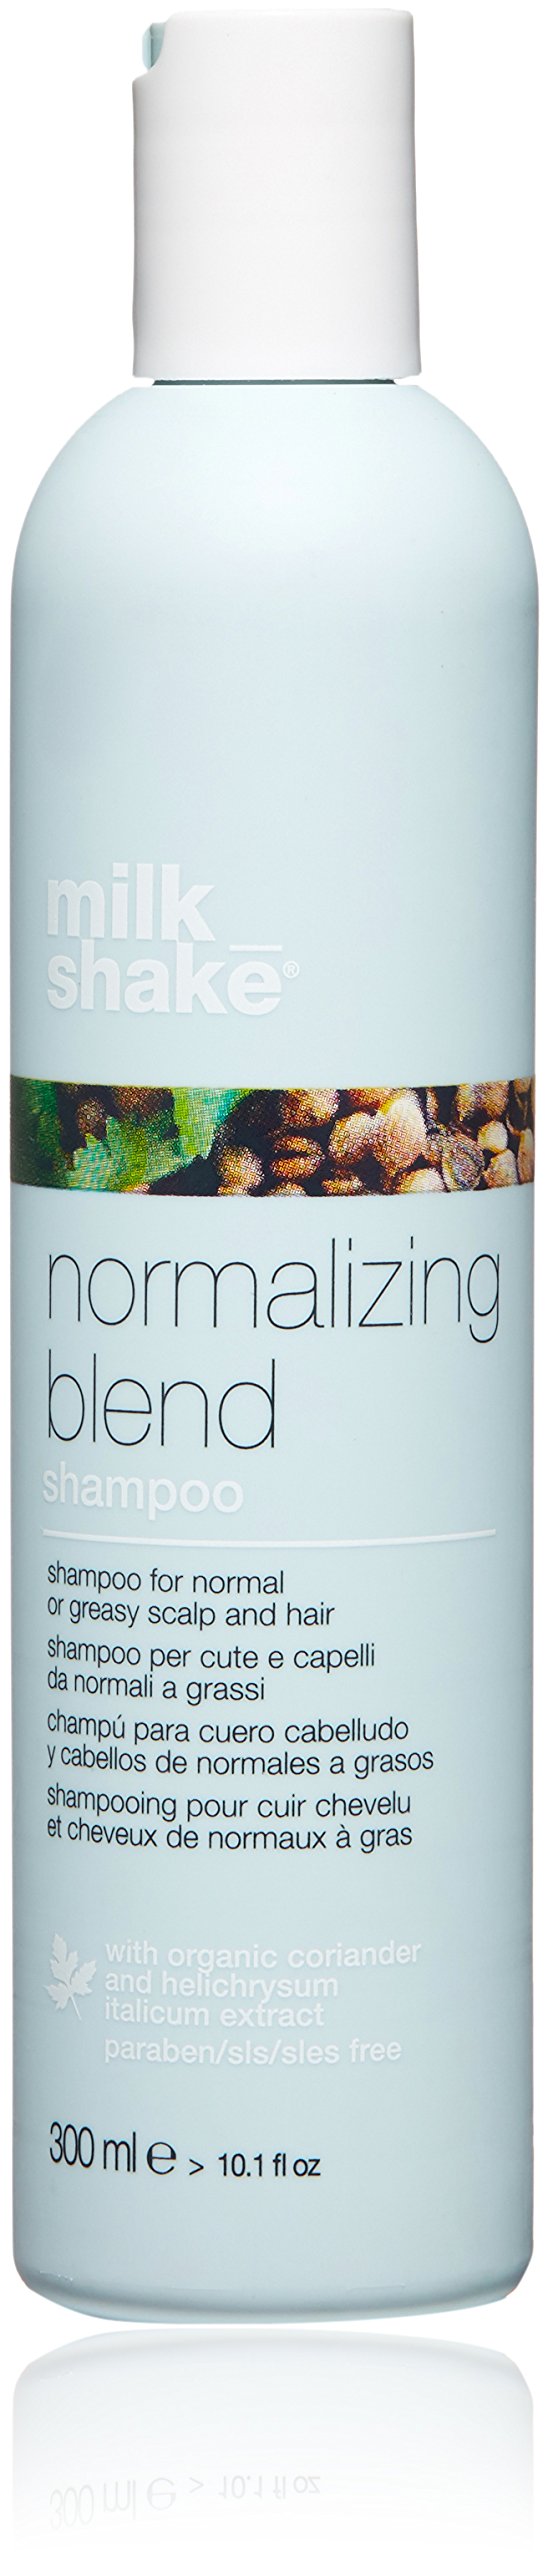 z.one normalizing blend szampon